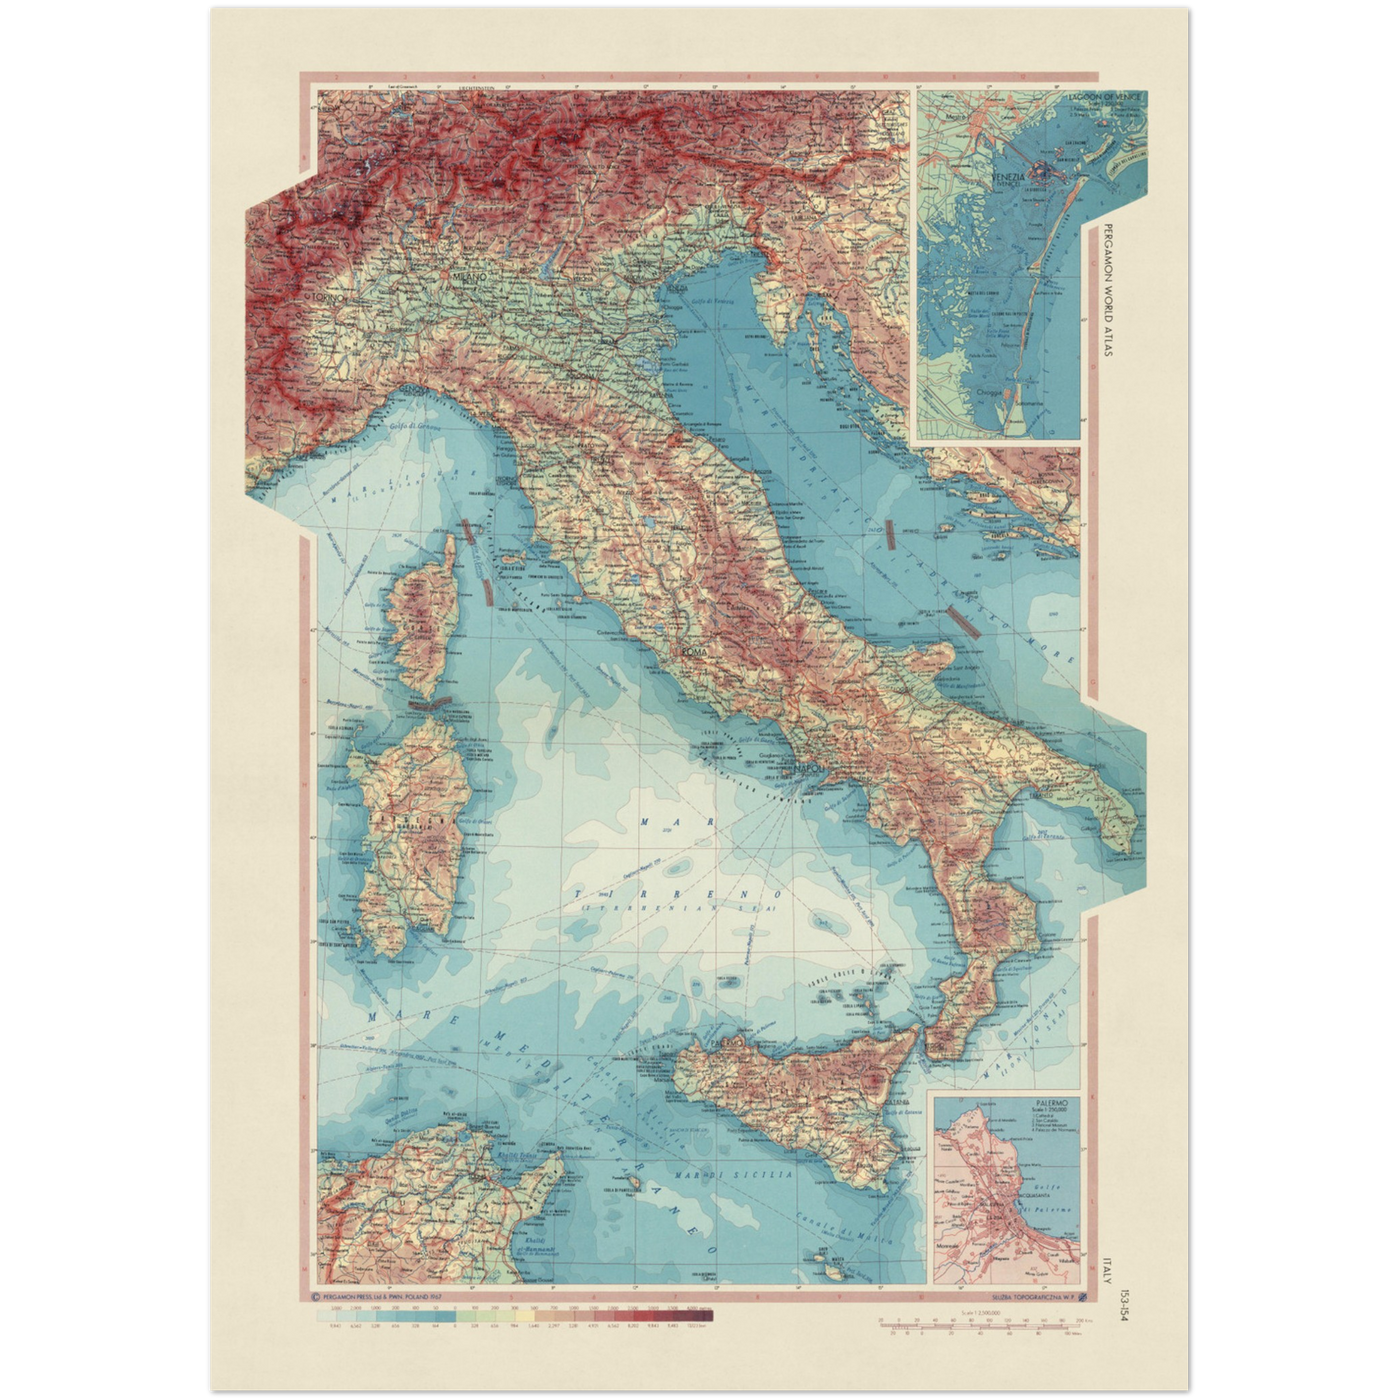 Mapa antiguo de Italia del Servicio de Topografía del Ejército Polaco, 1967: Córcega, Cerdeña, Sicilia, Mar Tirreno, Mar Adriático